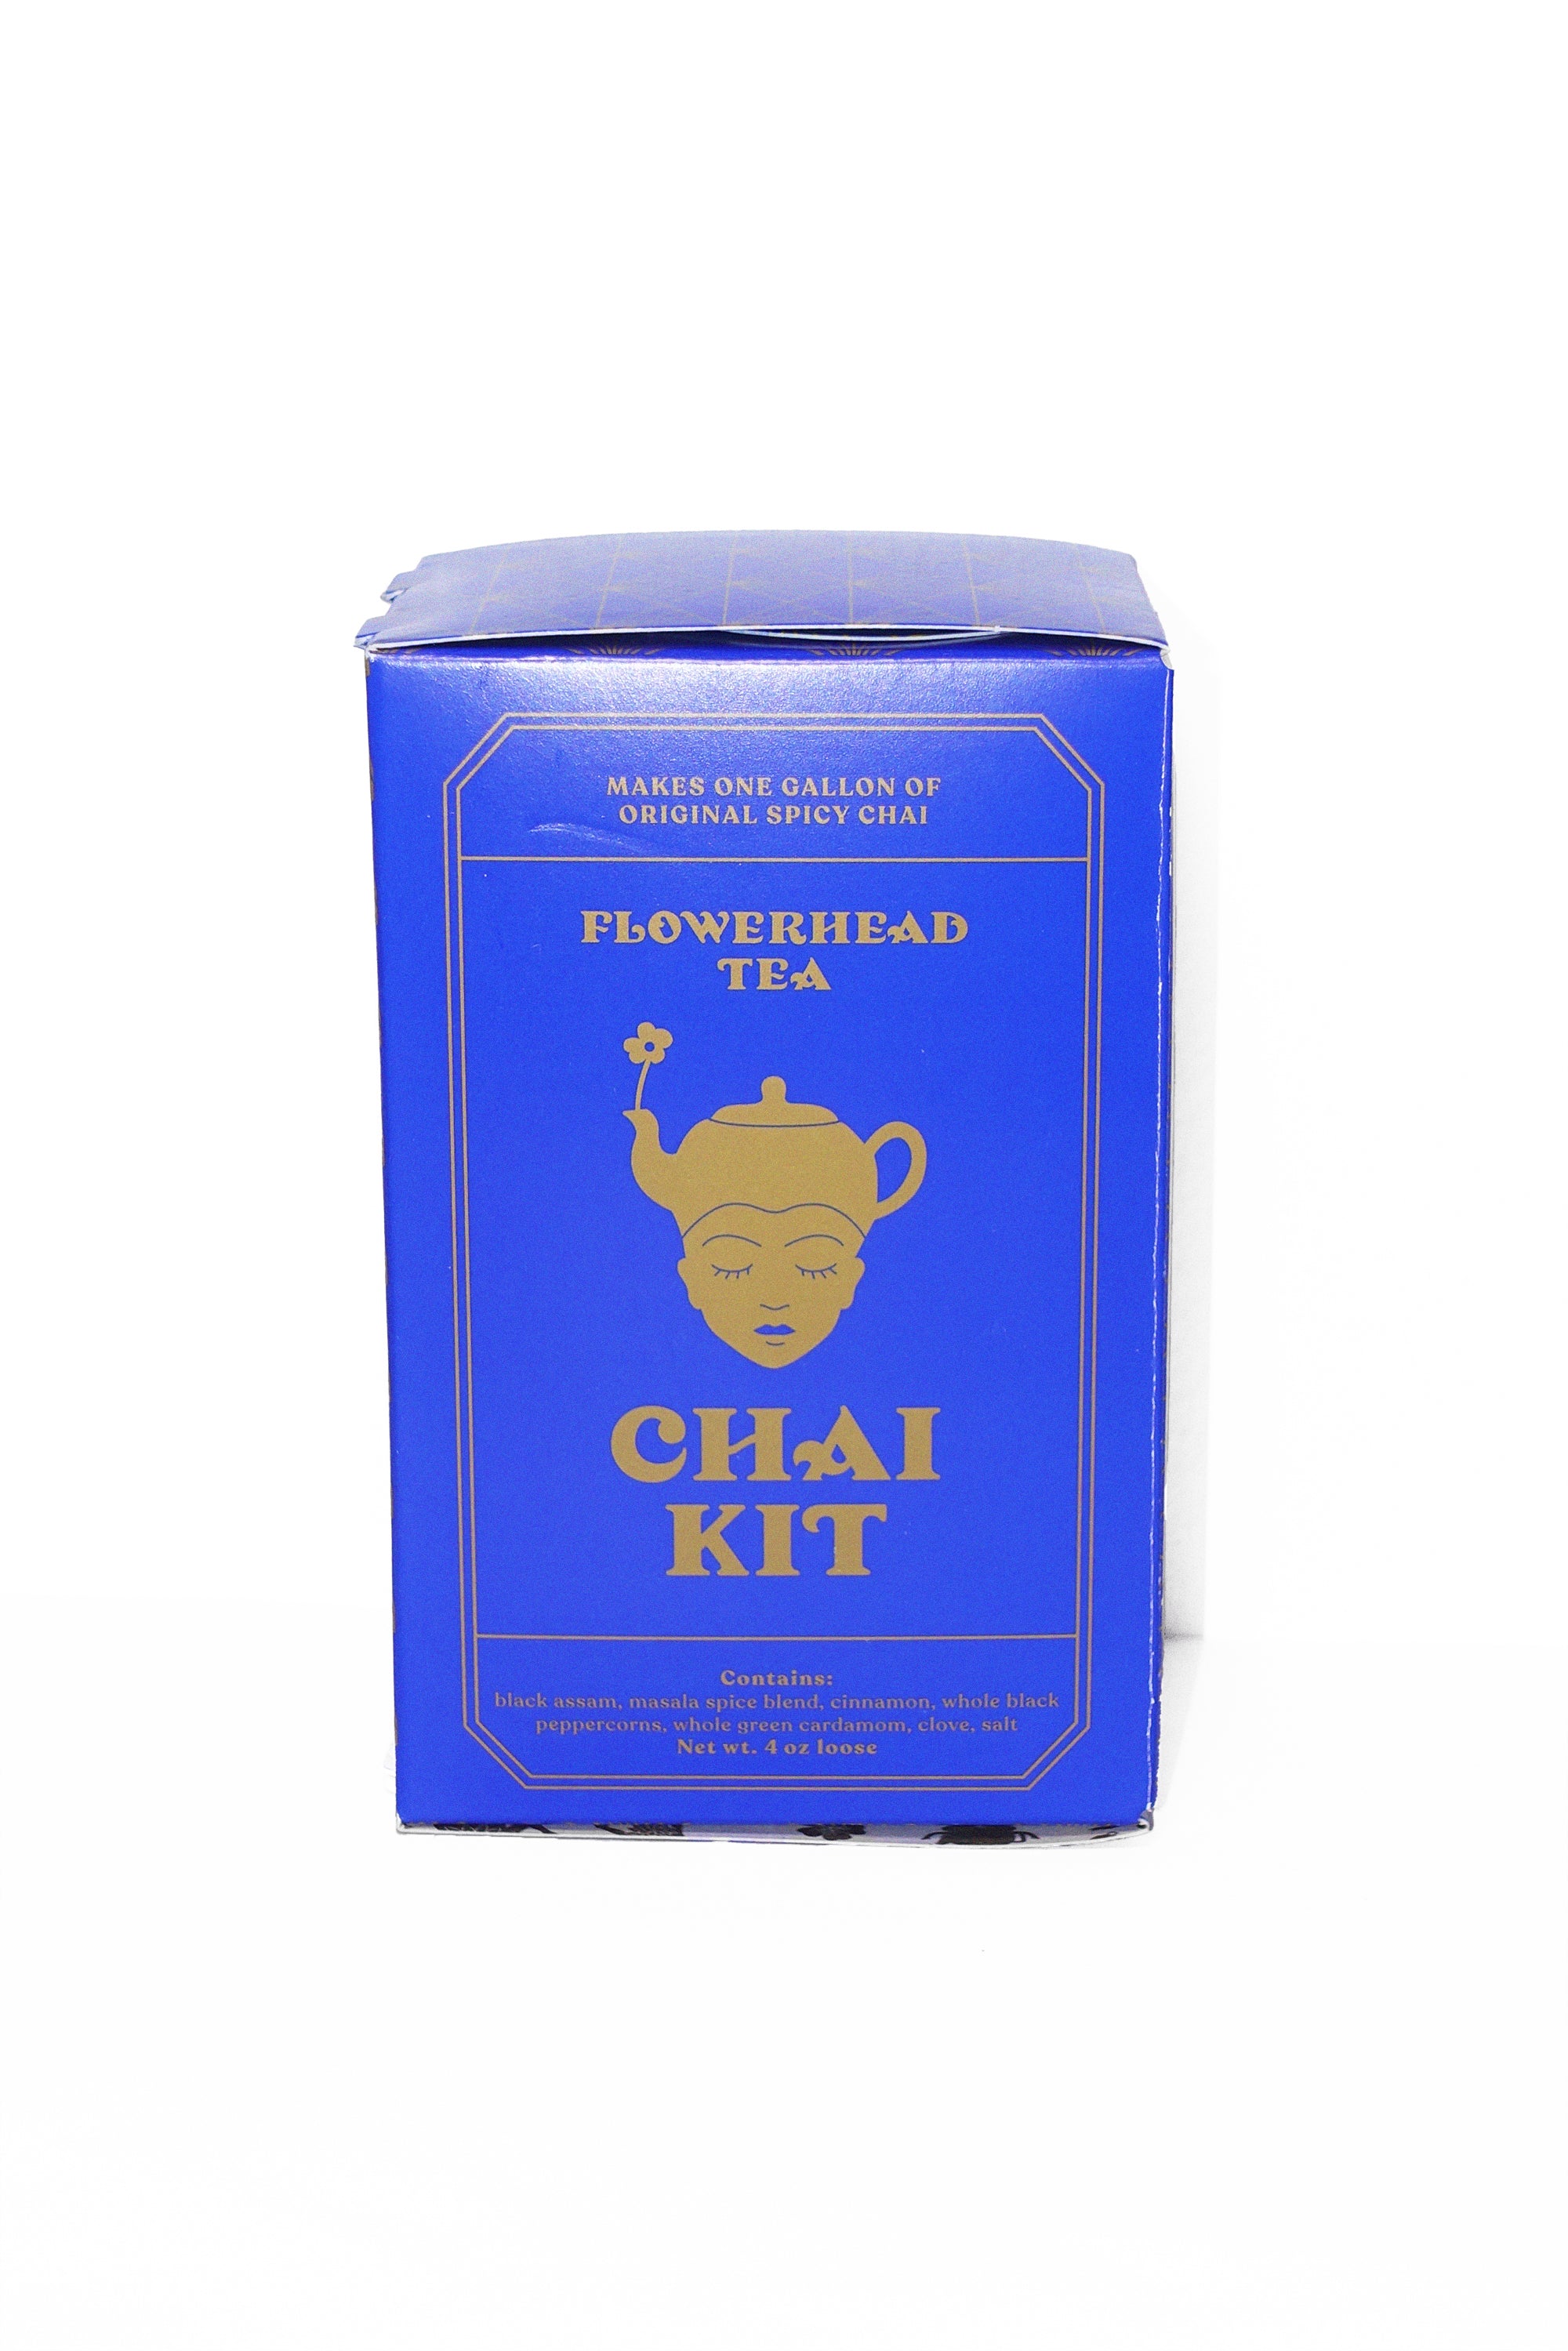 OG Chai Kit by Flowerhead Tea